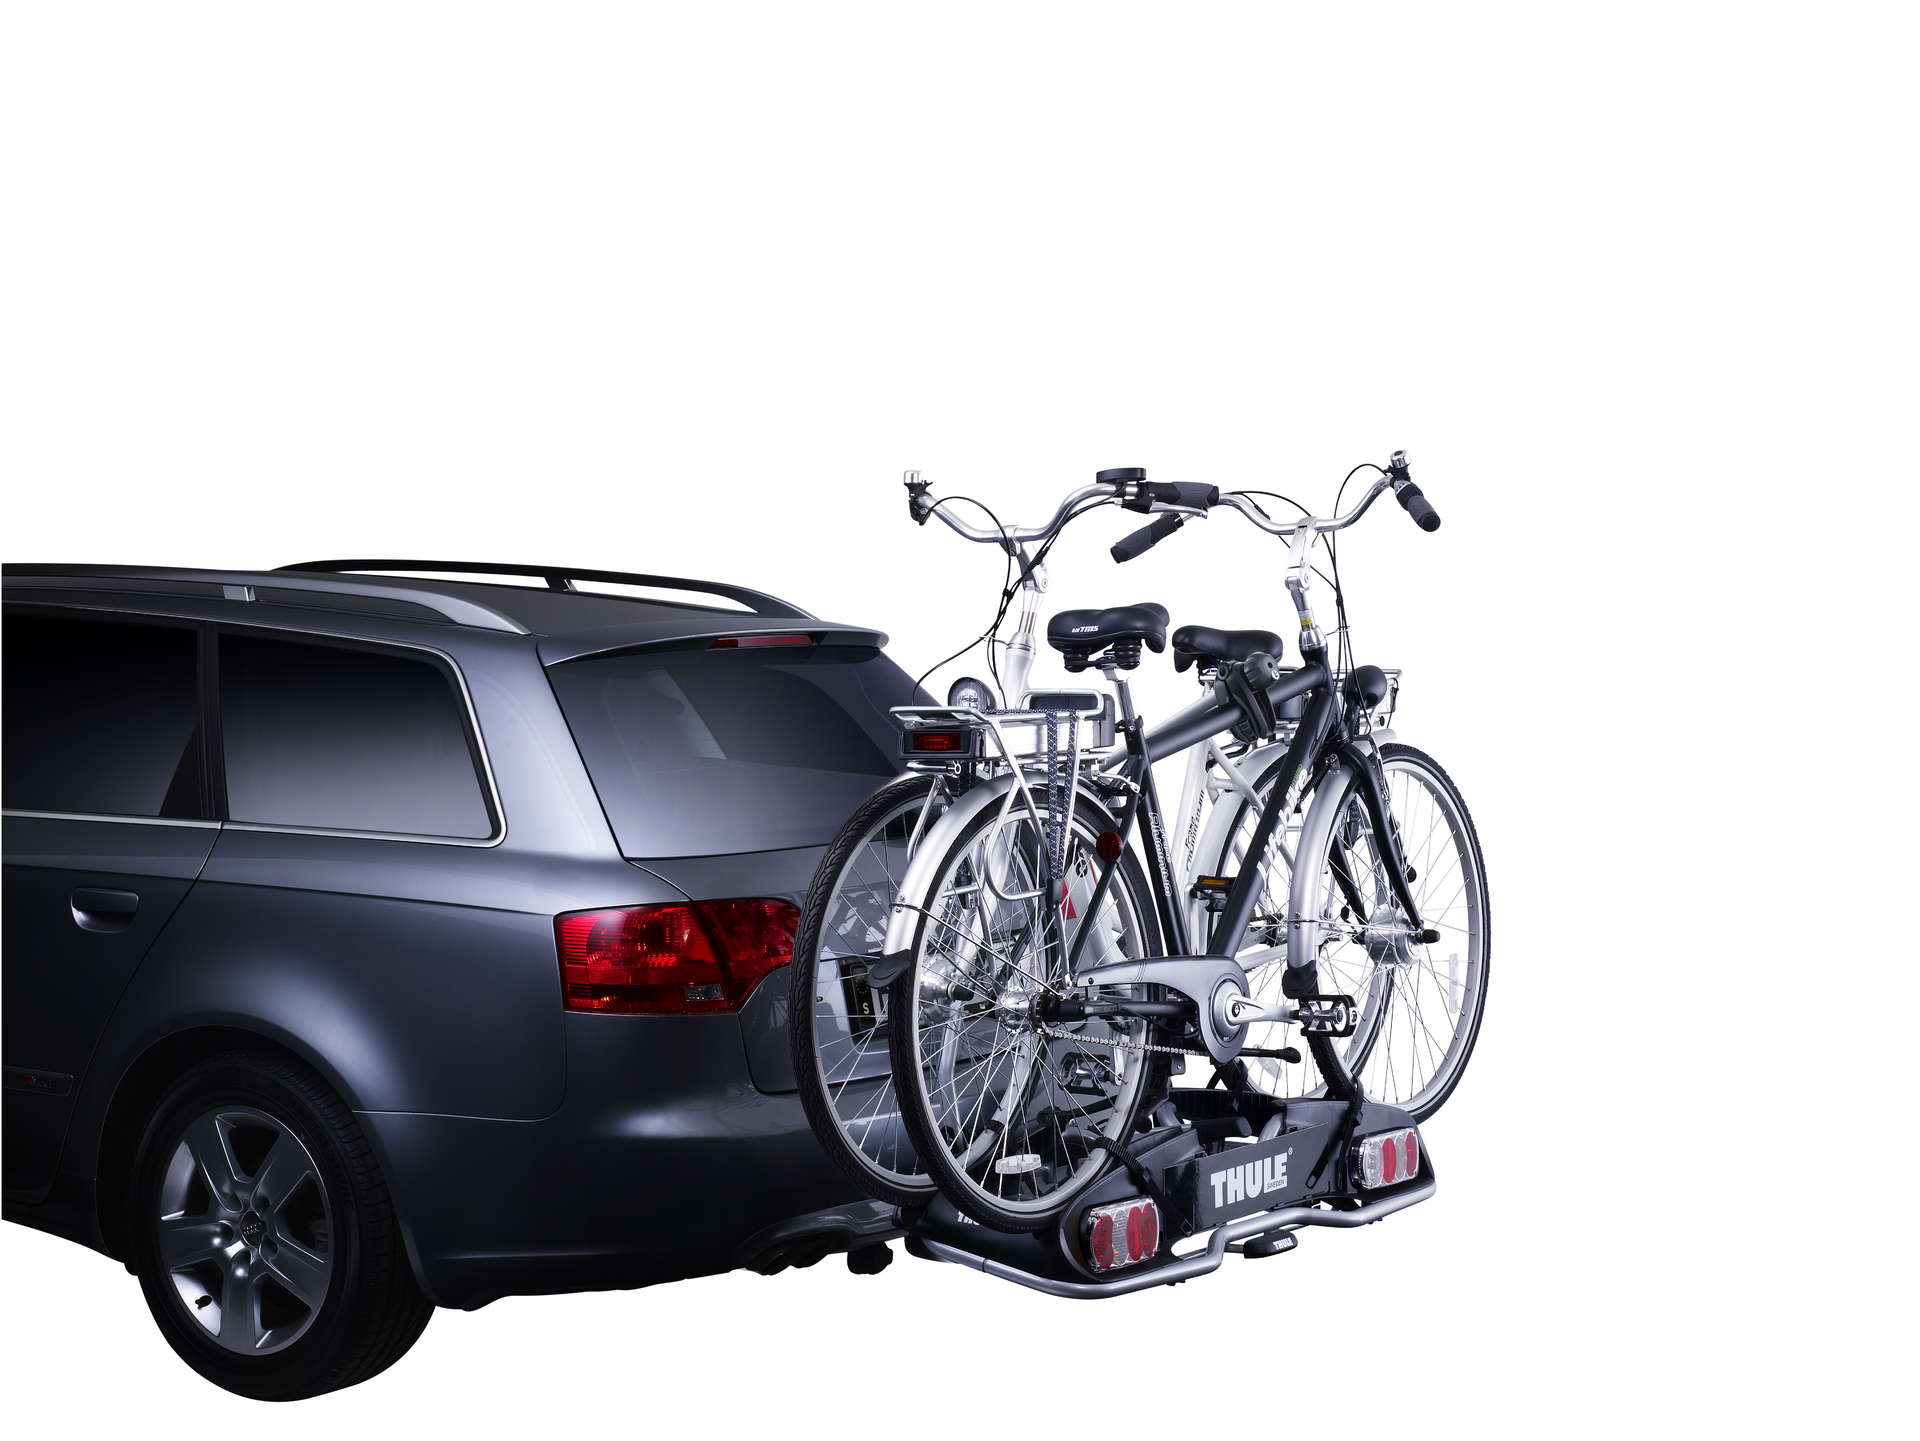 Durch den größeren Abstand zwischen den Felgenhaltern ist dieser EuroPower  915 Fahrradträger von Thule ideal für den Transport schwererer und größerer  Fahrräder wie E-Bikes oder größere Mountainbikes. Durch den  Abklappmechanismus bleibt der